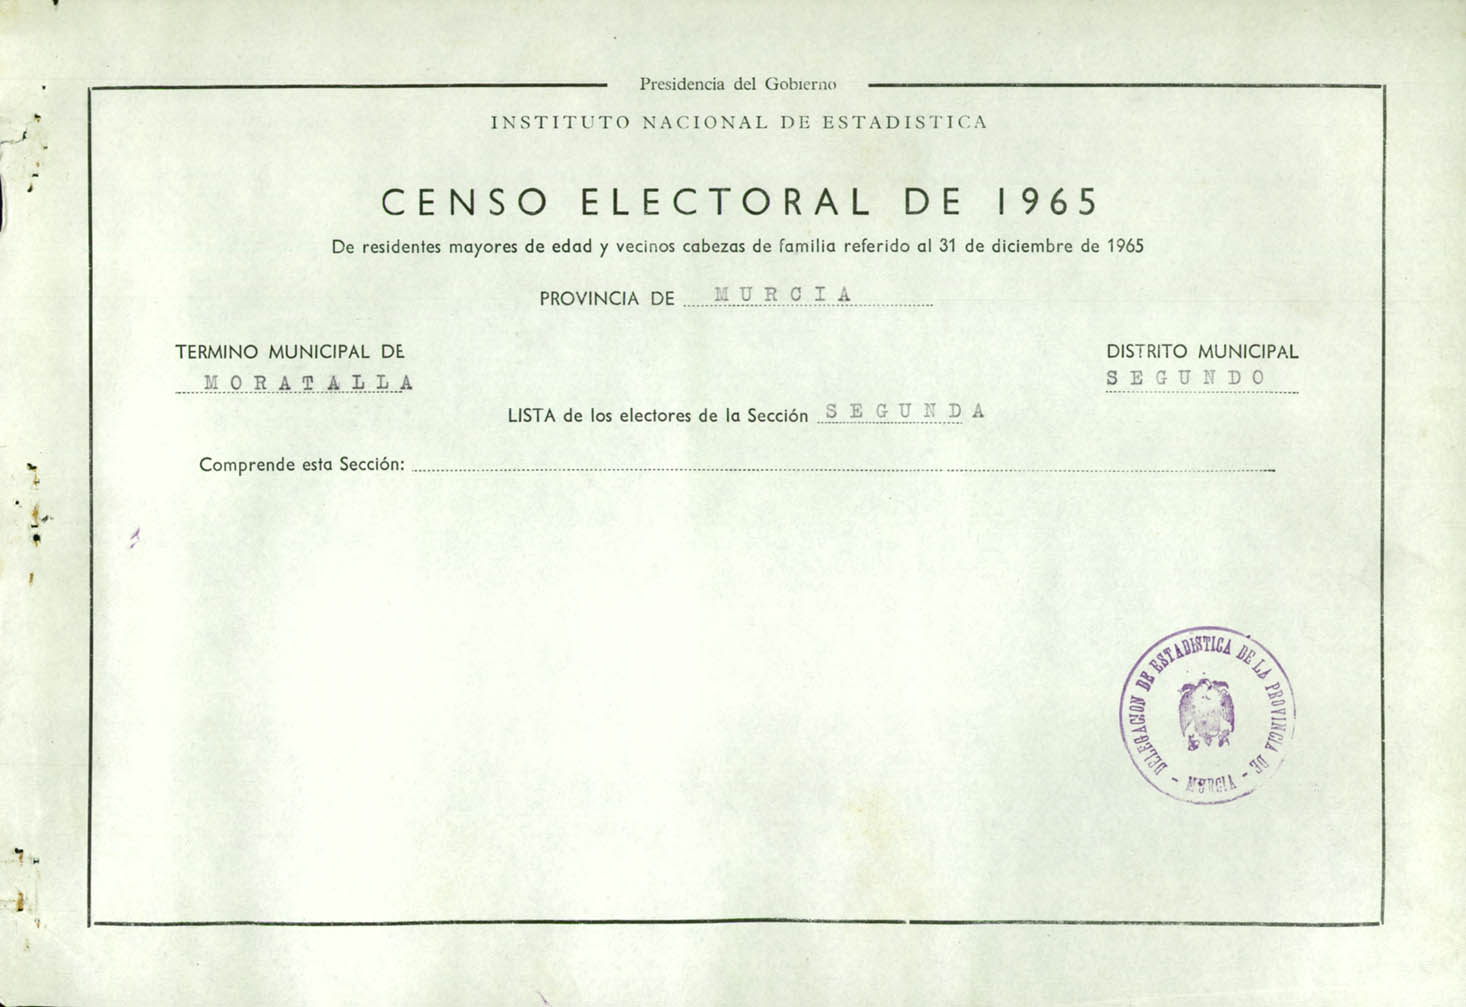 Censo electoral provincial de 1965: listas definitivas de Moratalla, Distrito 2º, sección 2ª.